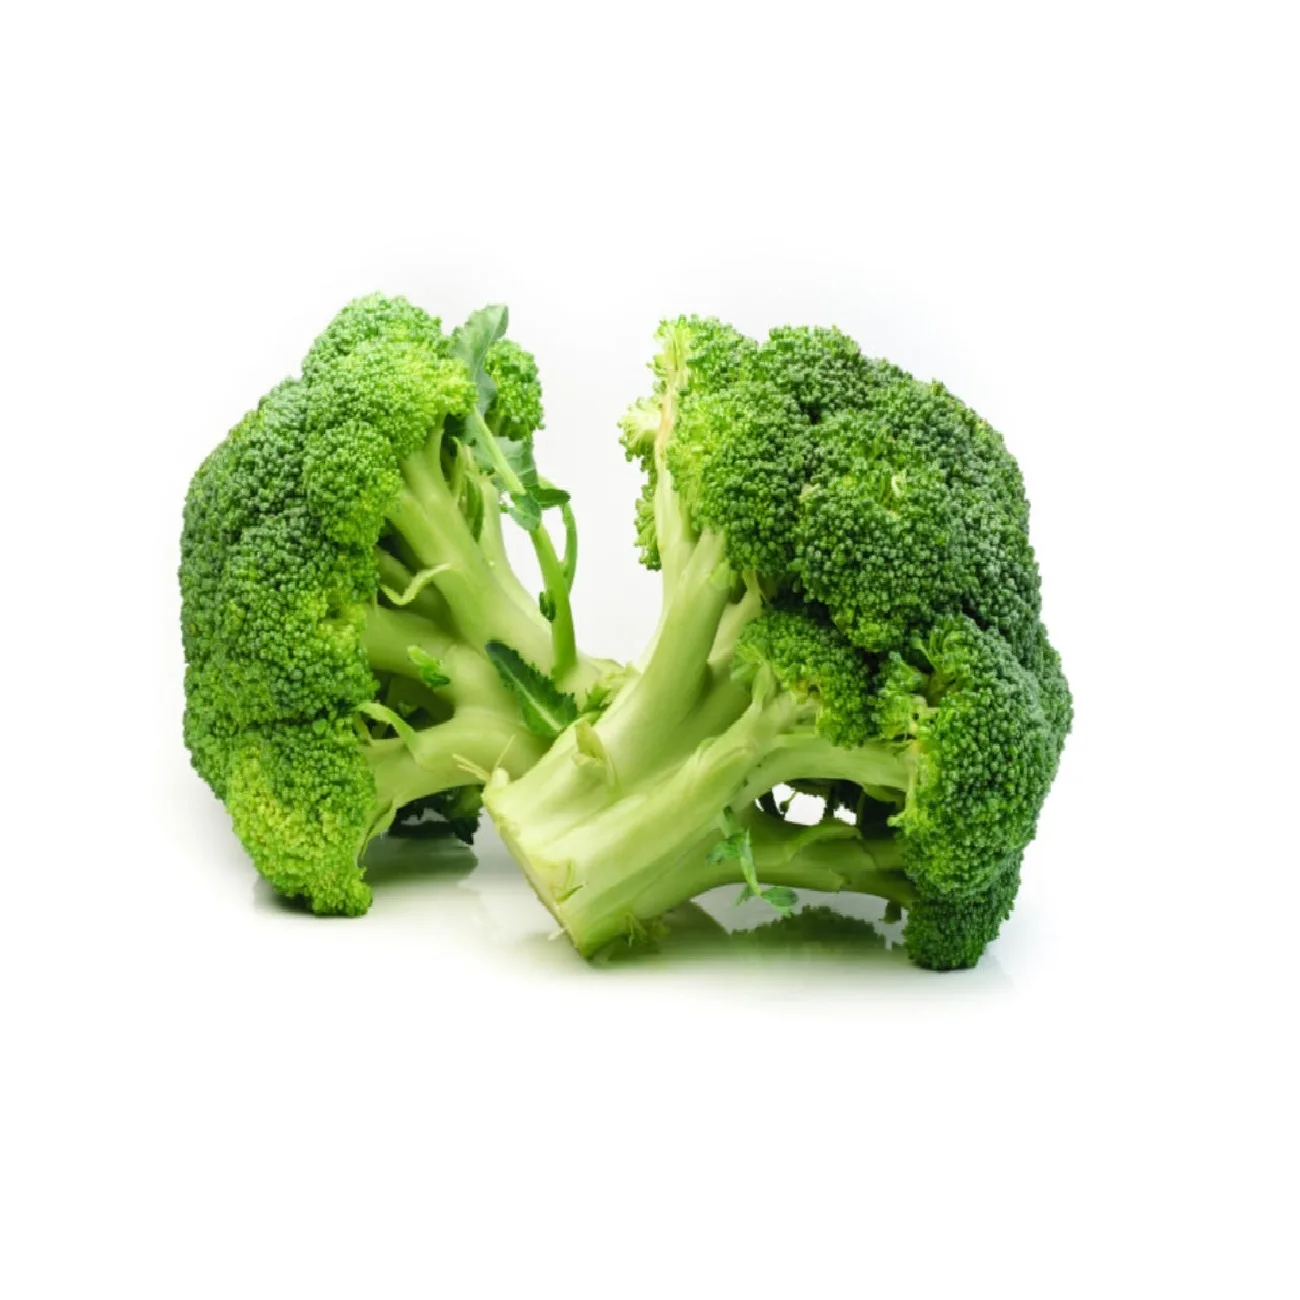 Broccoli proaspăt de vânzare cel mai bun preț și calitate, salată iceberg gata de export